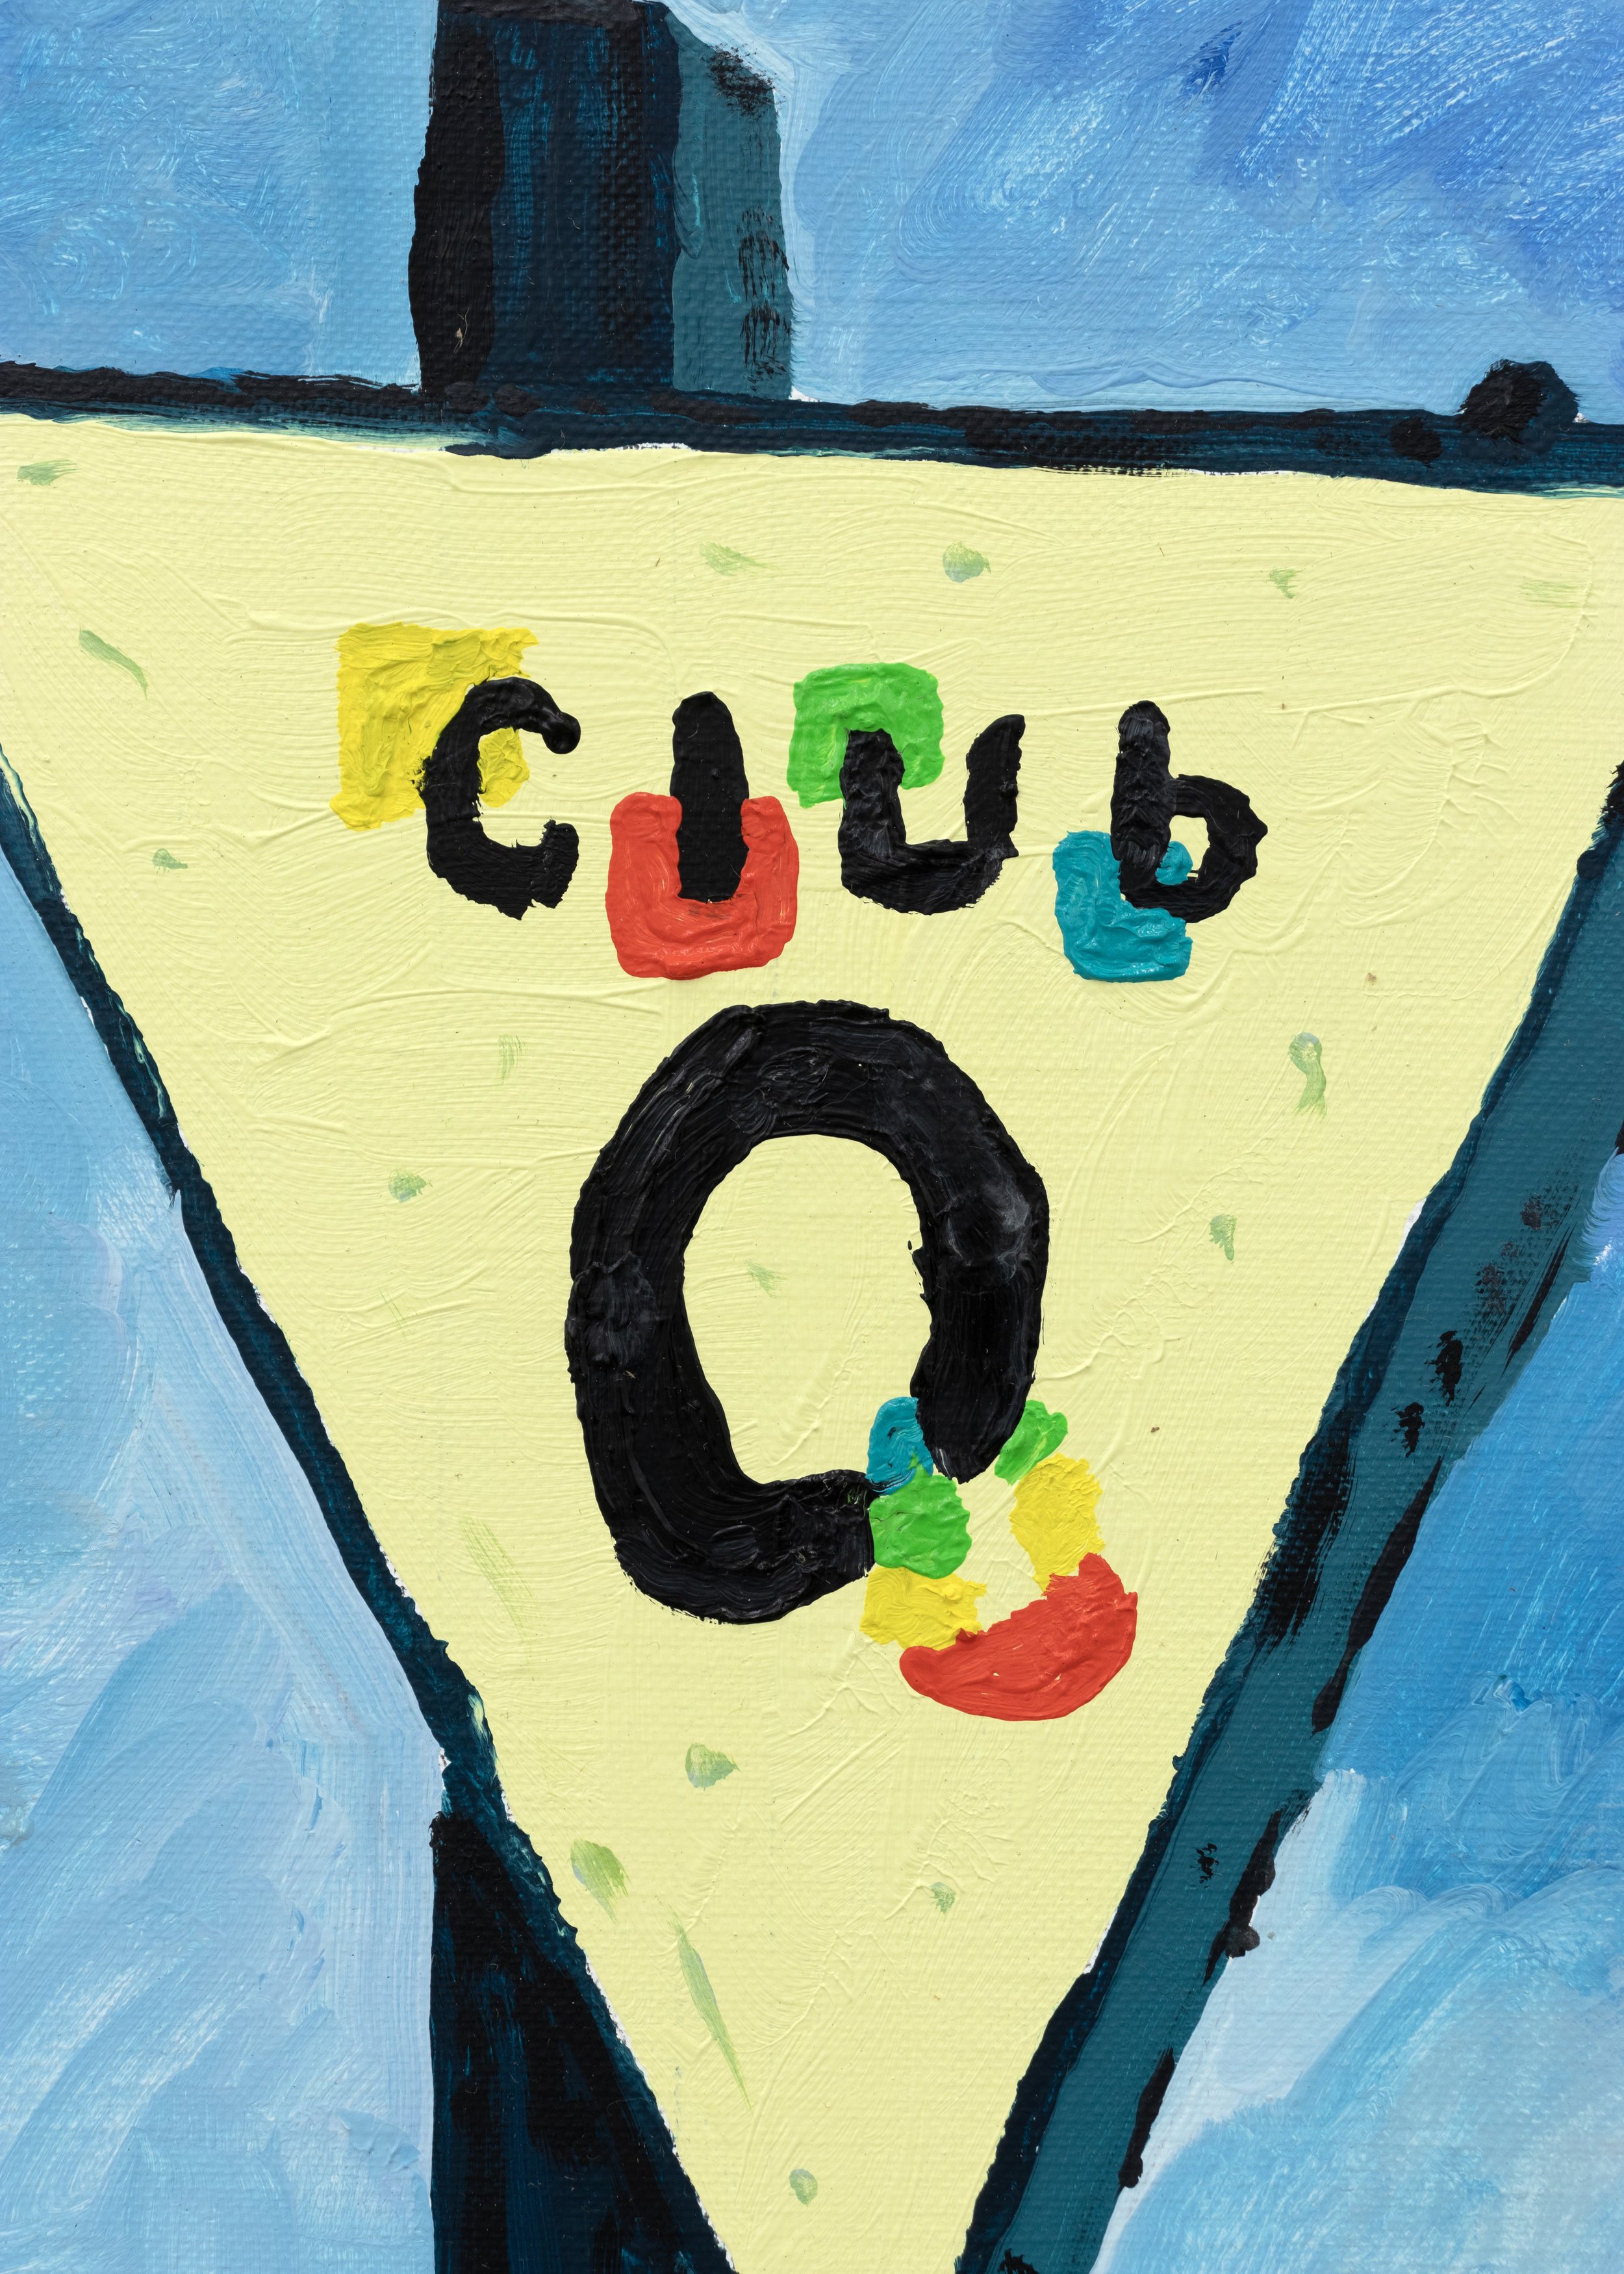 detail of Club Q